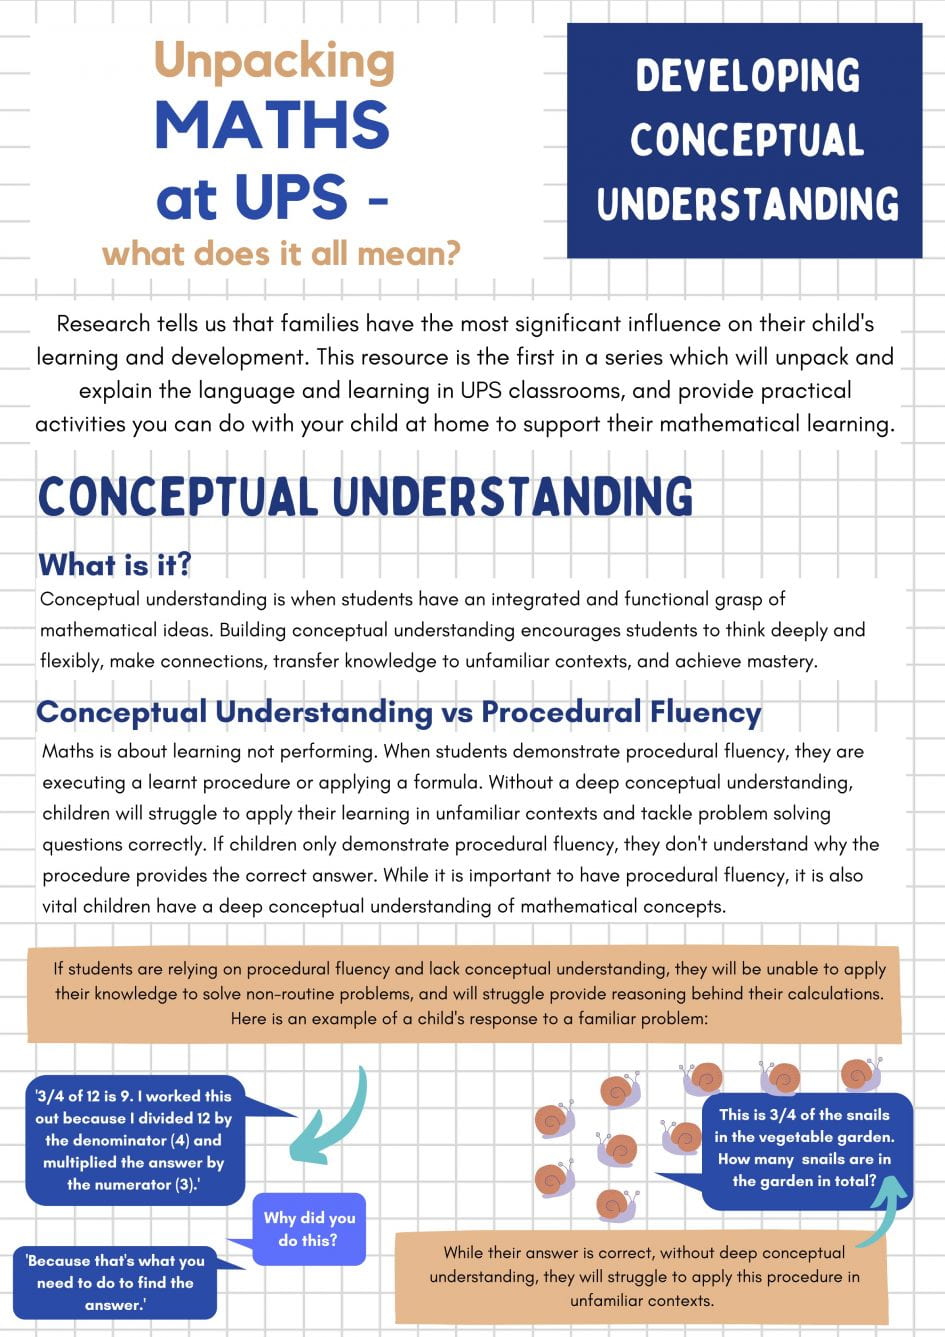 what is conceptual understanding